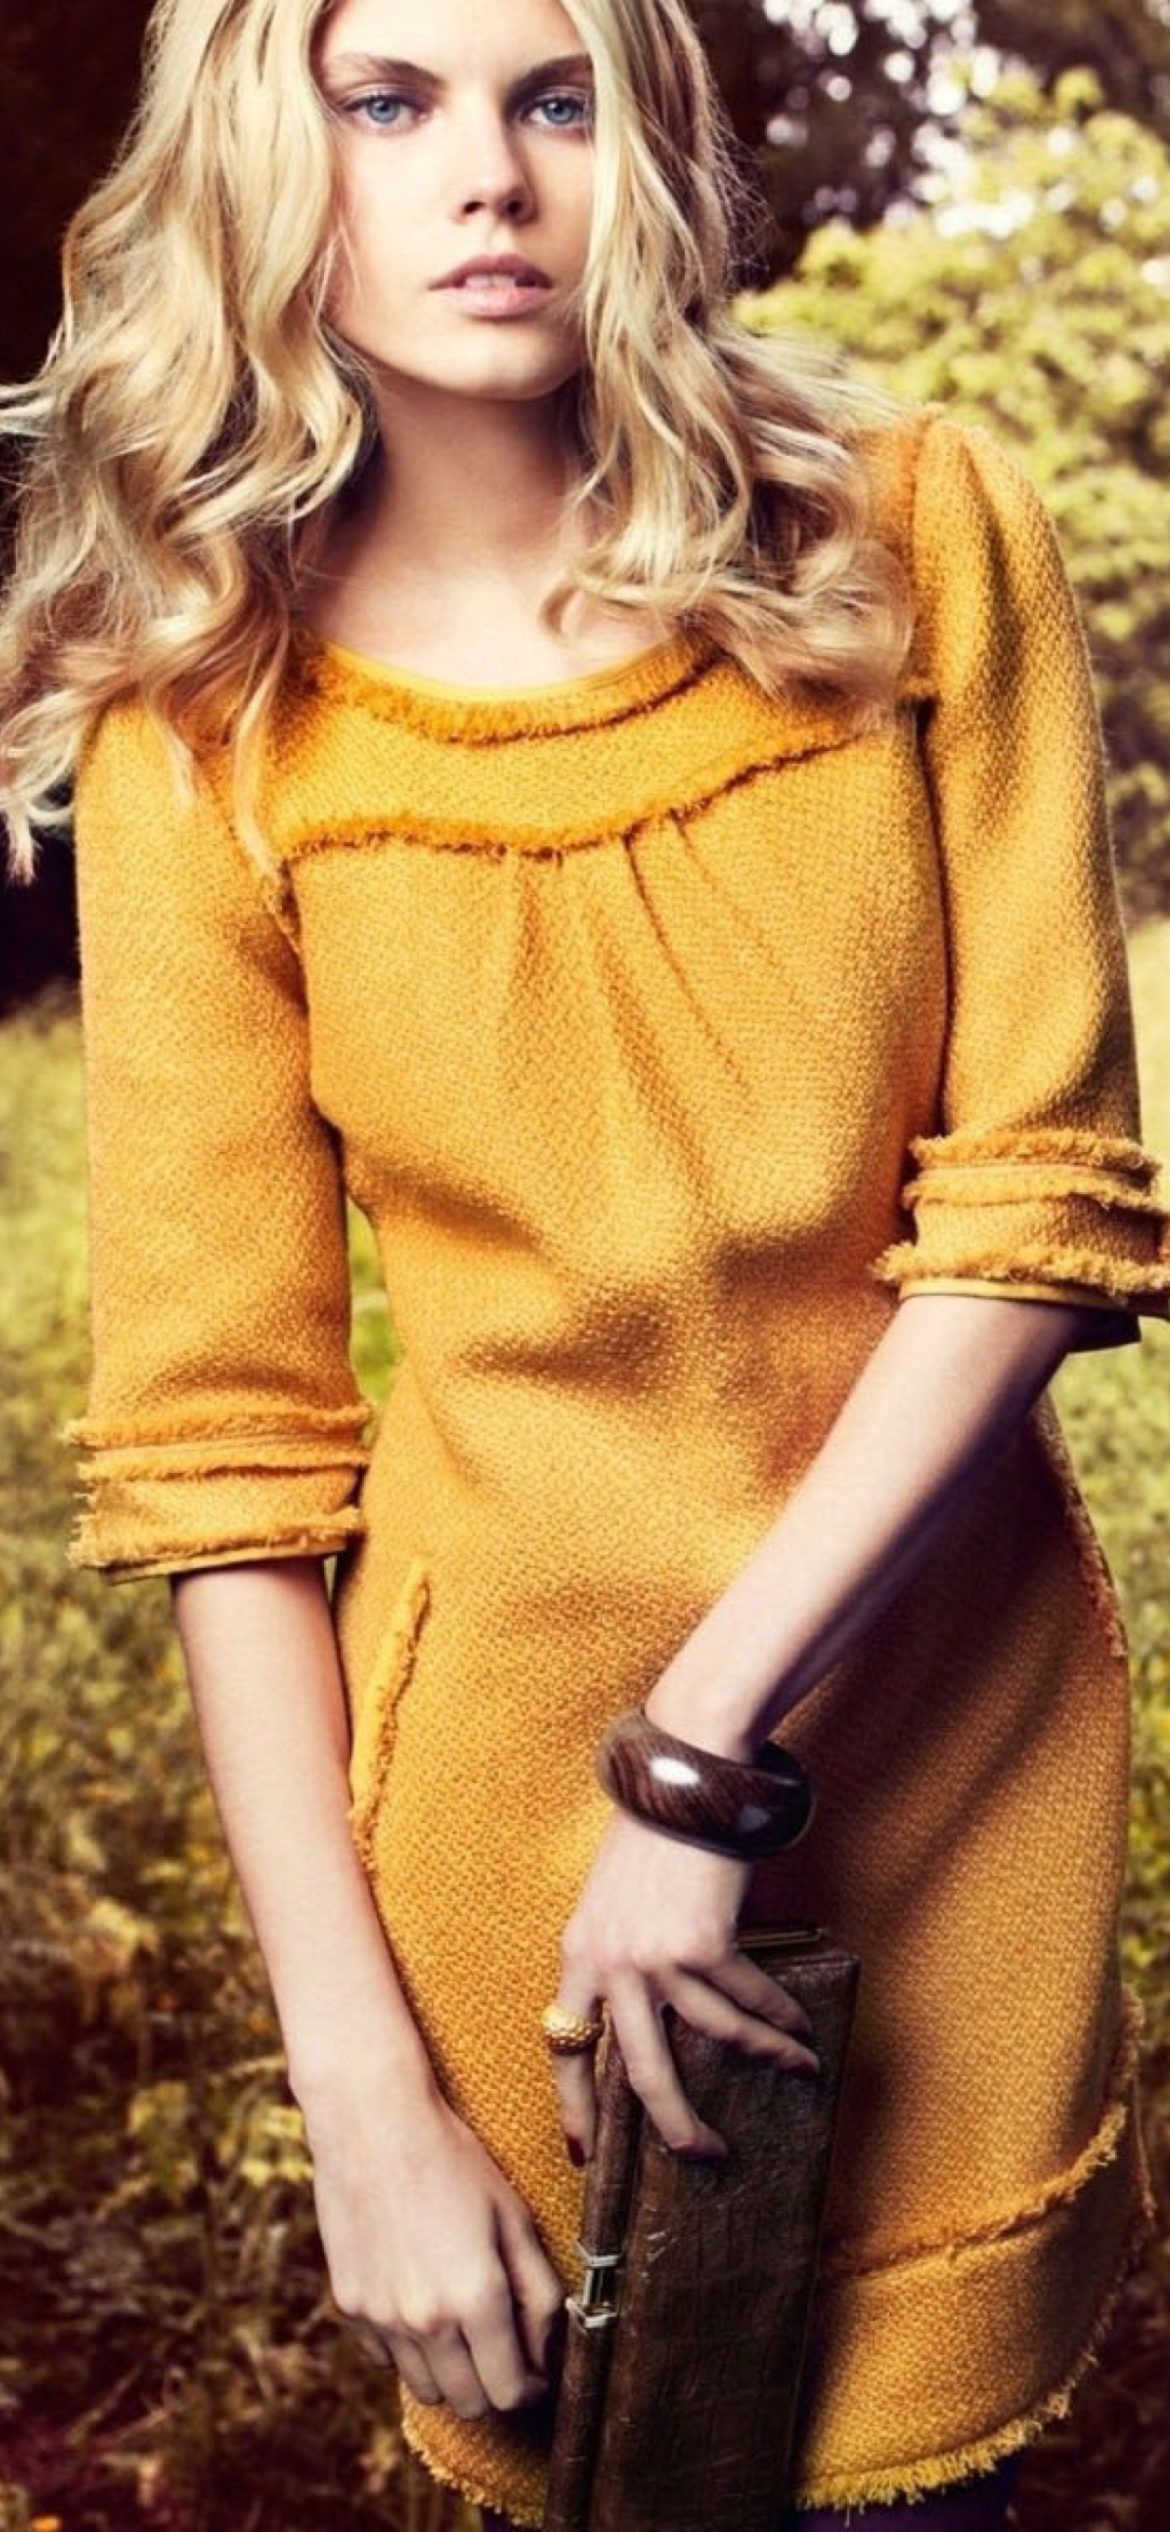 Girl In Yellow Dress screenshot #1 1170x2532